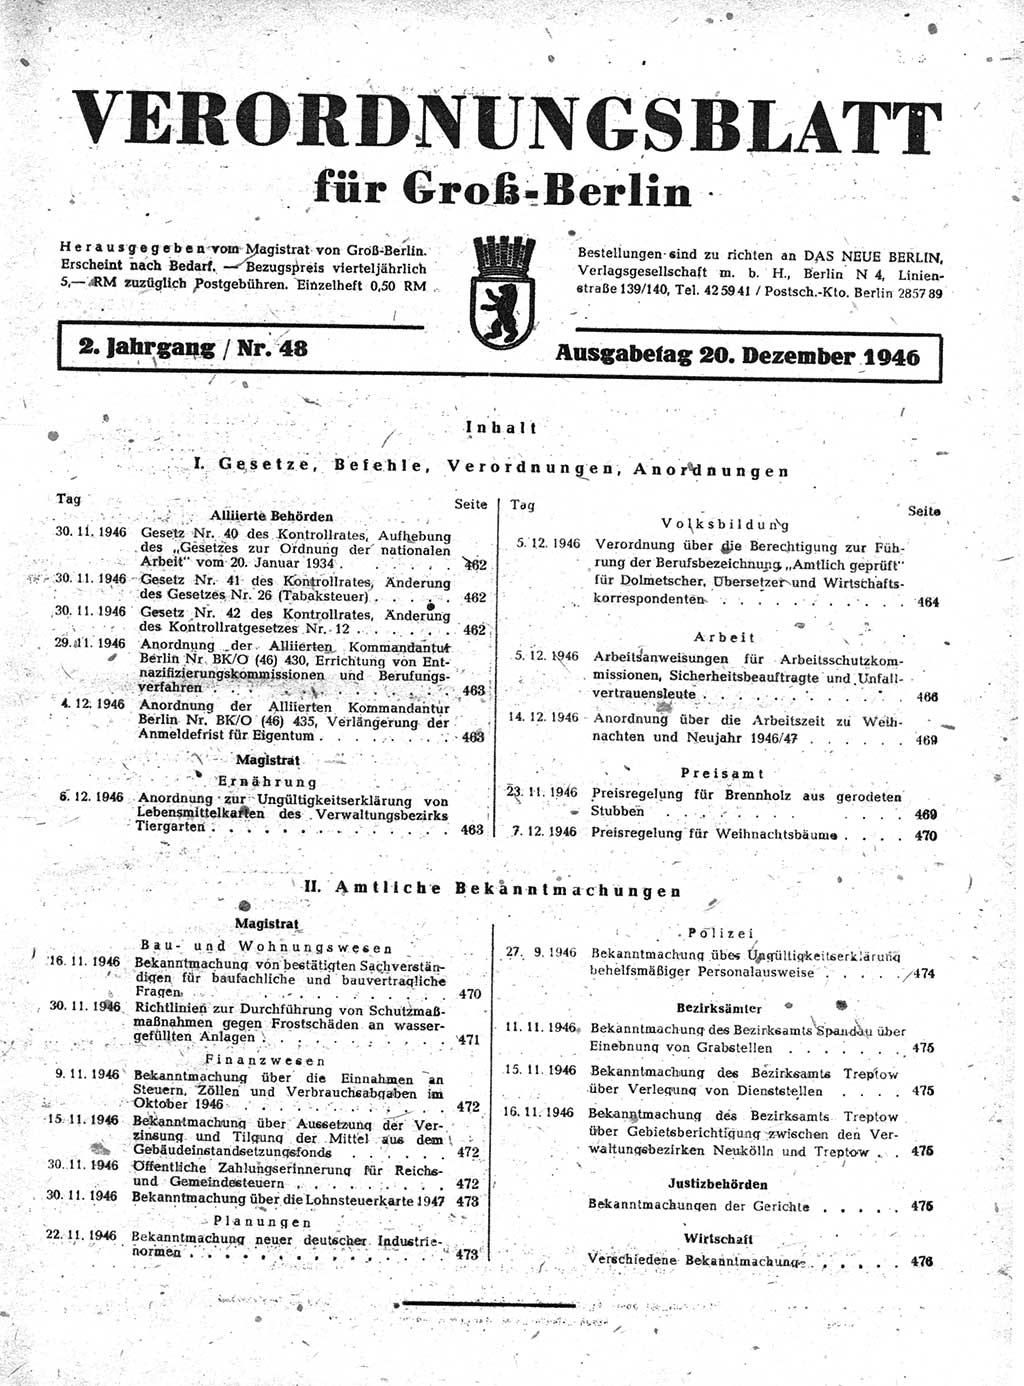 Verordnungsblatt (VOBl.) der Stadt Berlin, für Groß-Berlin 1946, Seite 461 (VOBl. Bln. 1946, S. 461)